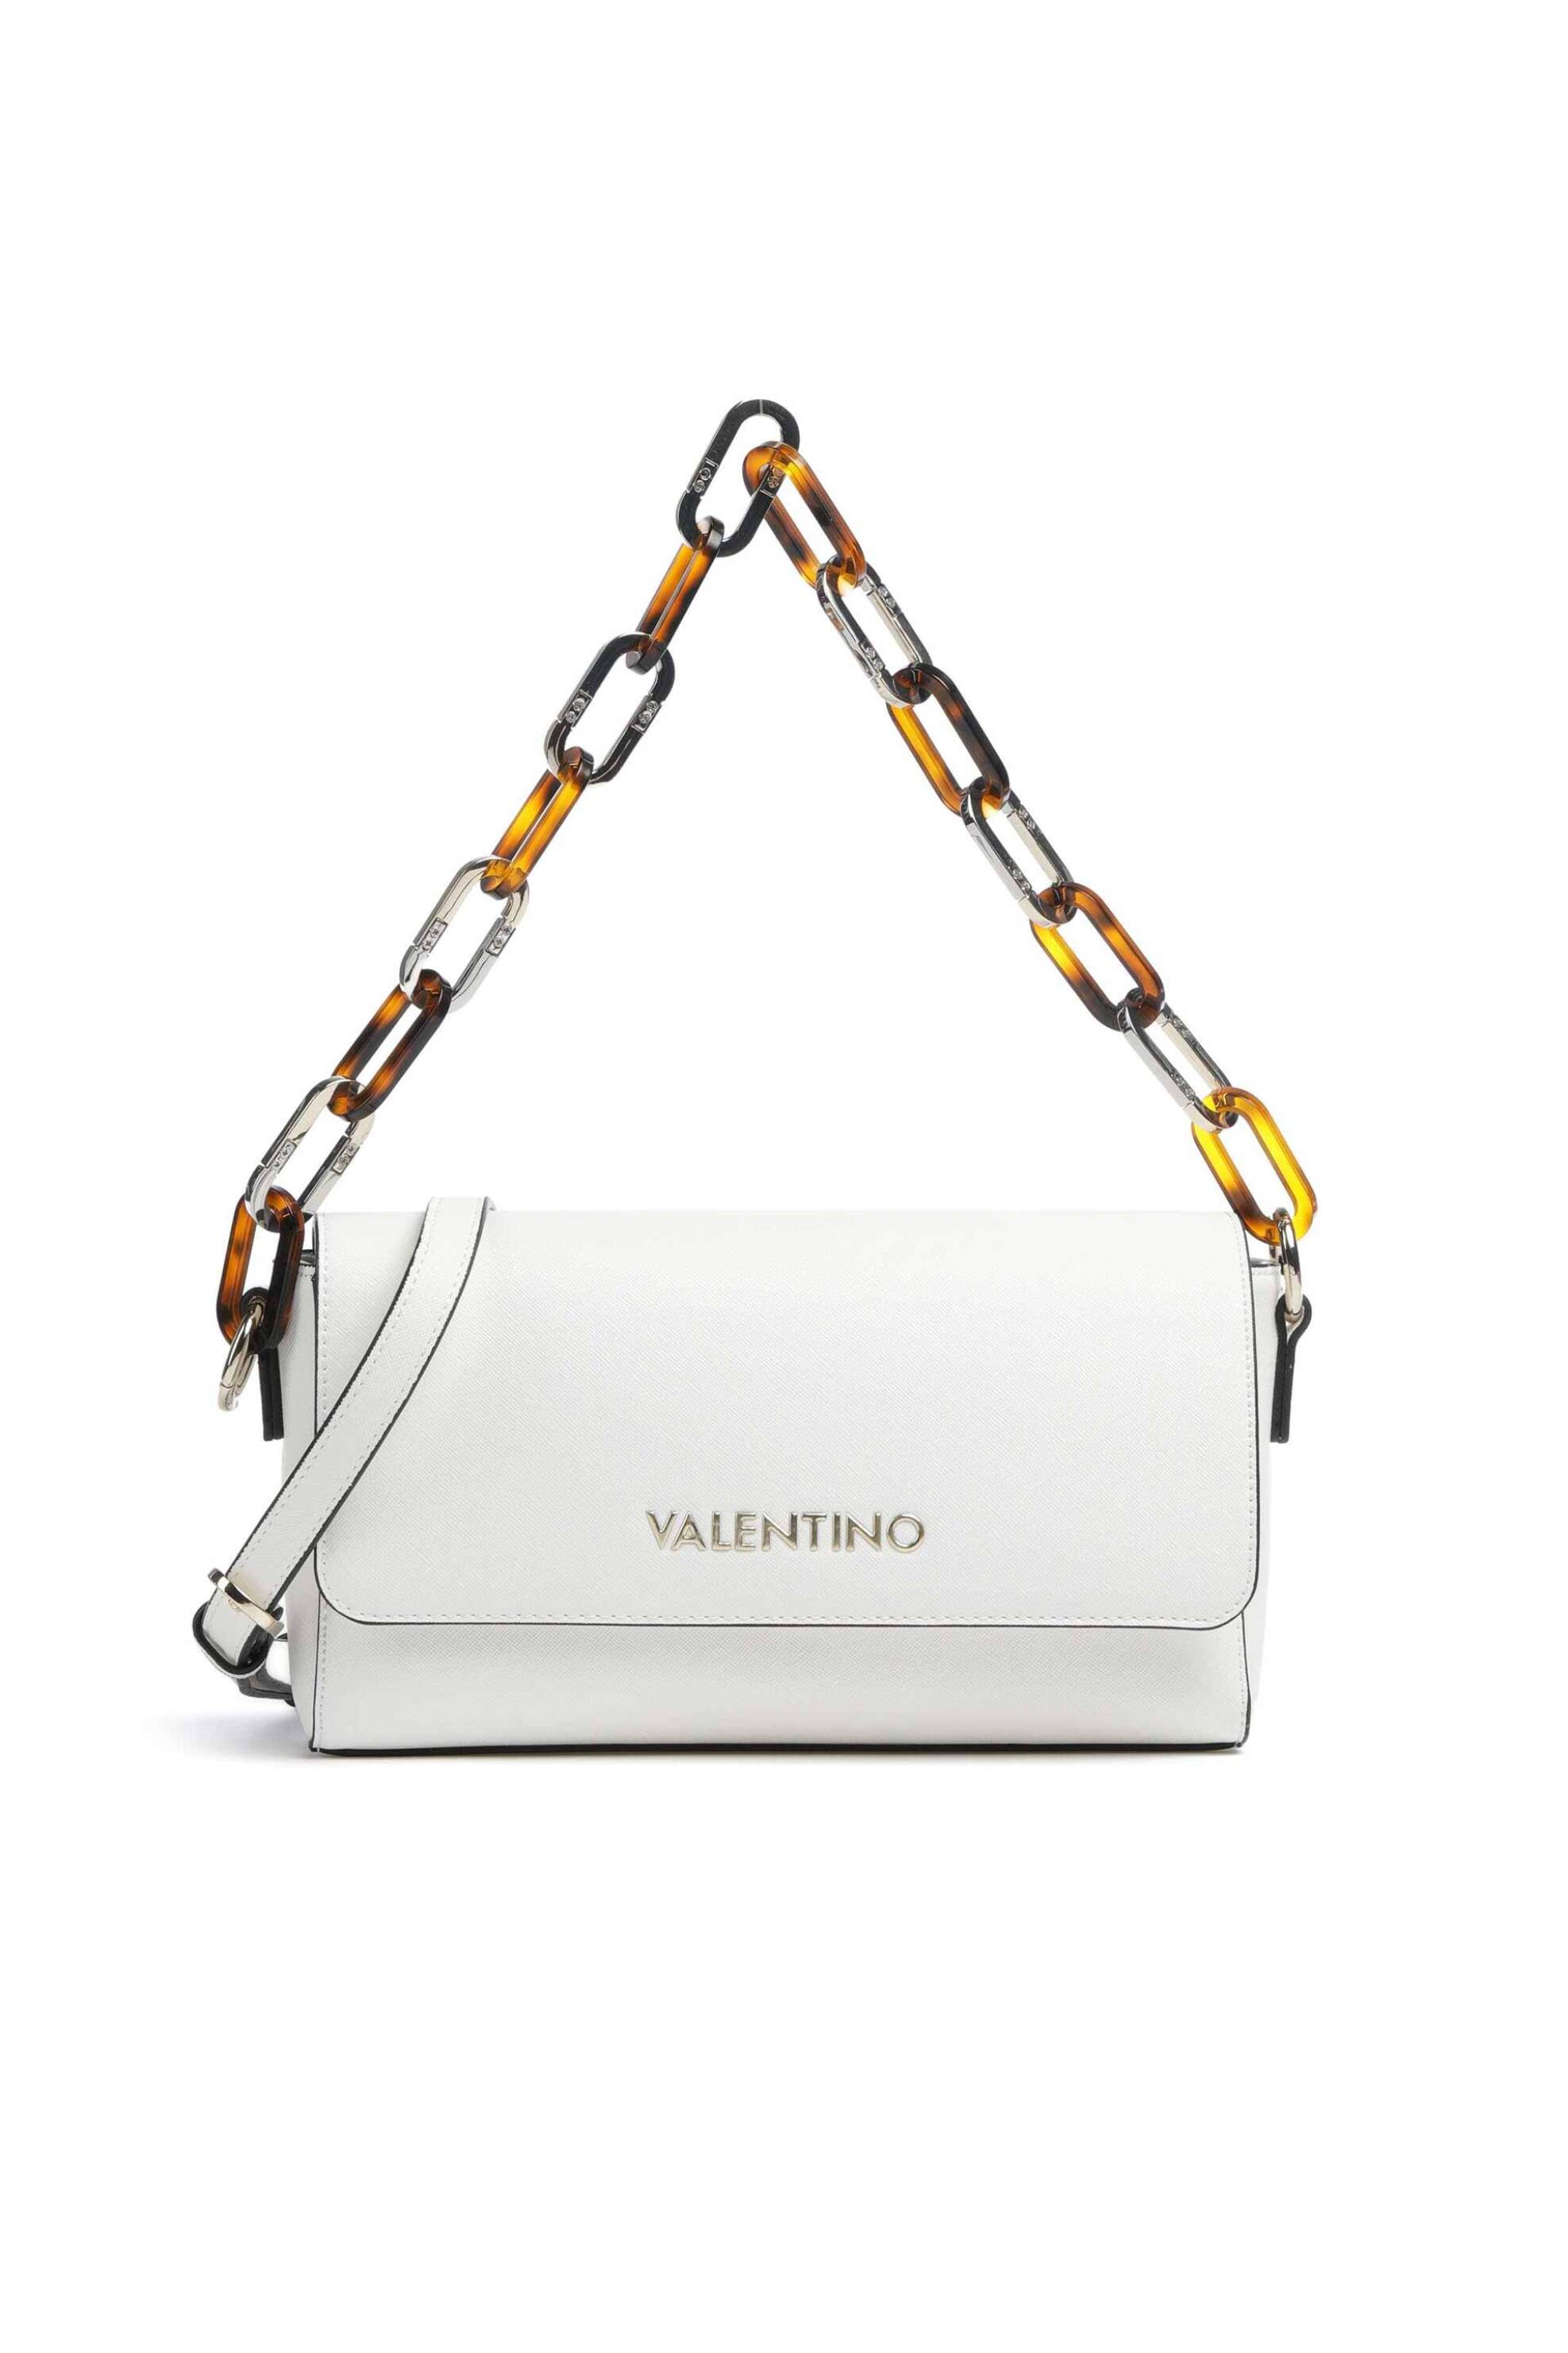 Γυναίκα > ΤΣΑΝΤΕΣ > Τσάντες Ώμου & Shopper Bags Valentino γυναικεία τσάντα ώμου μονόχρωμη με contrast logo μπροστά "Bercy" - 55KVBS7LM03/BER Λευκό